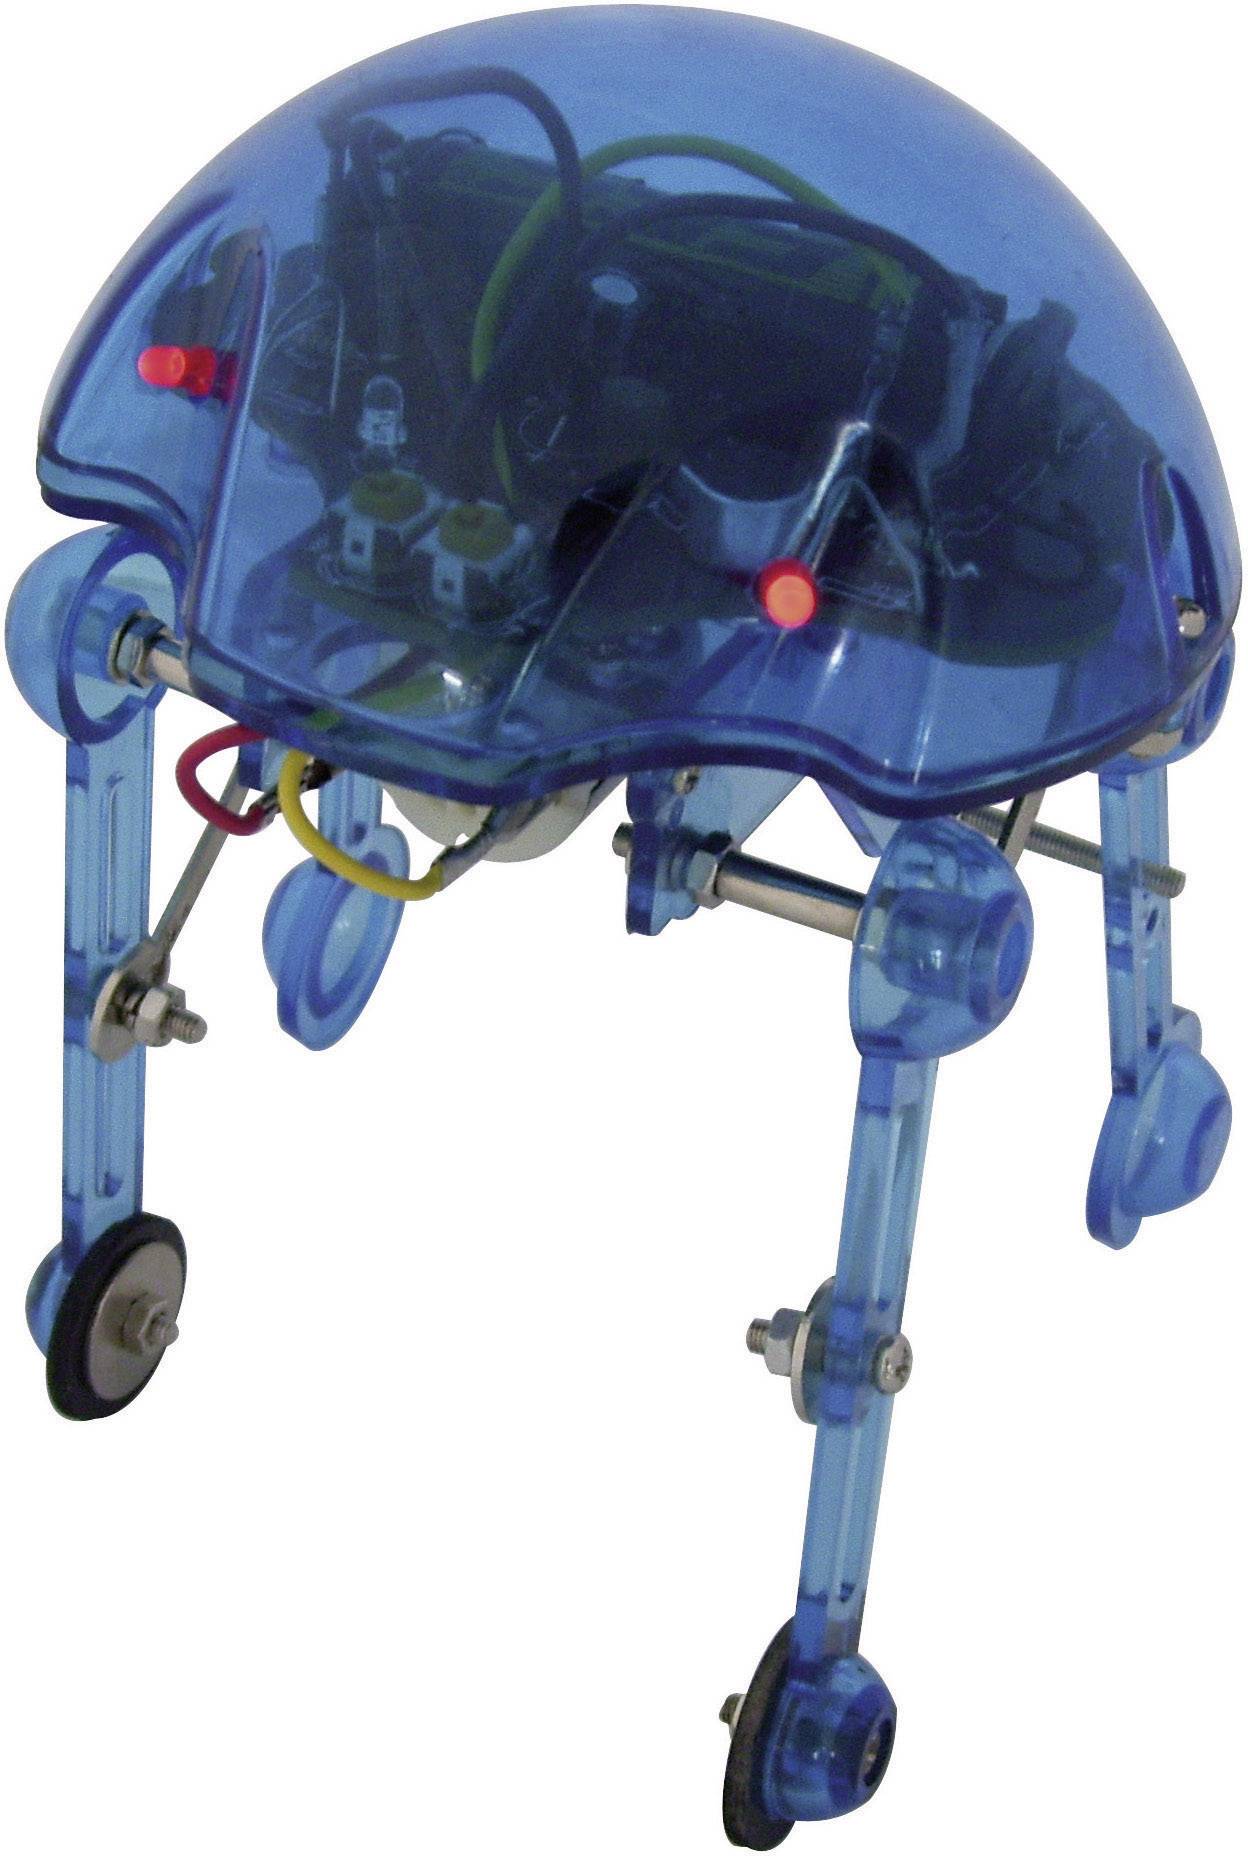 Walking robot assembly kit kit SW-007K | Conrad.com